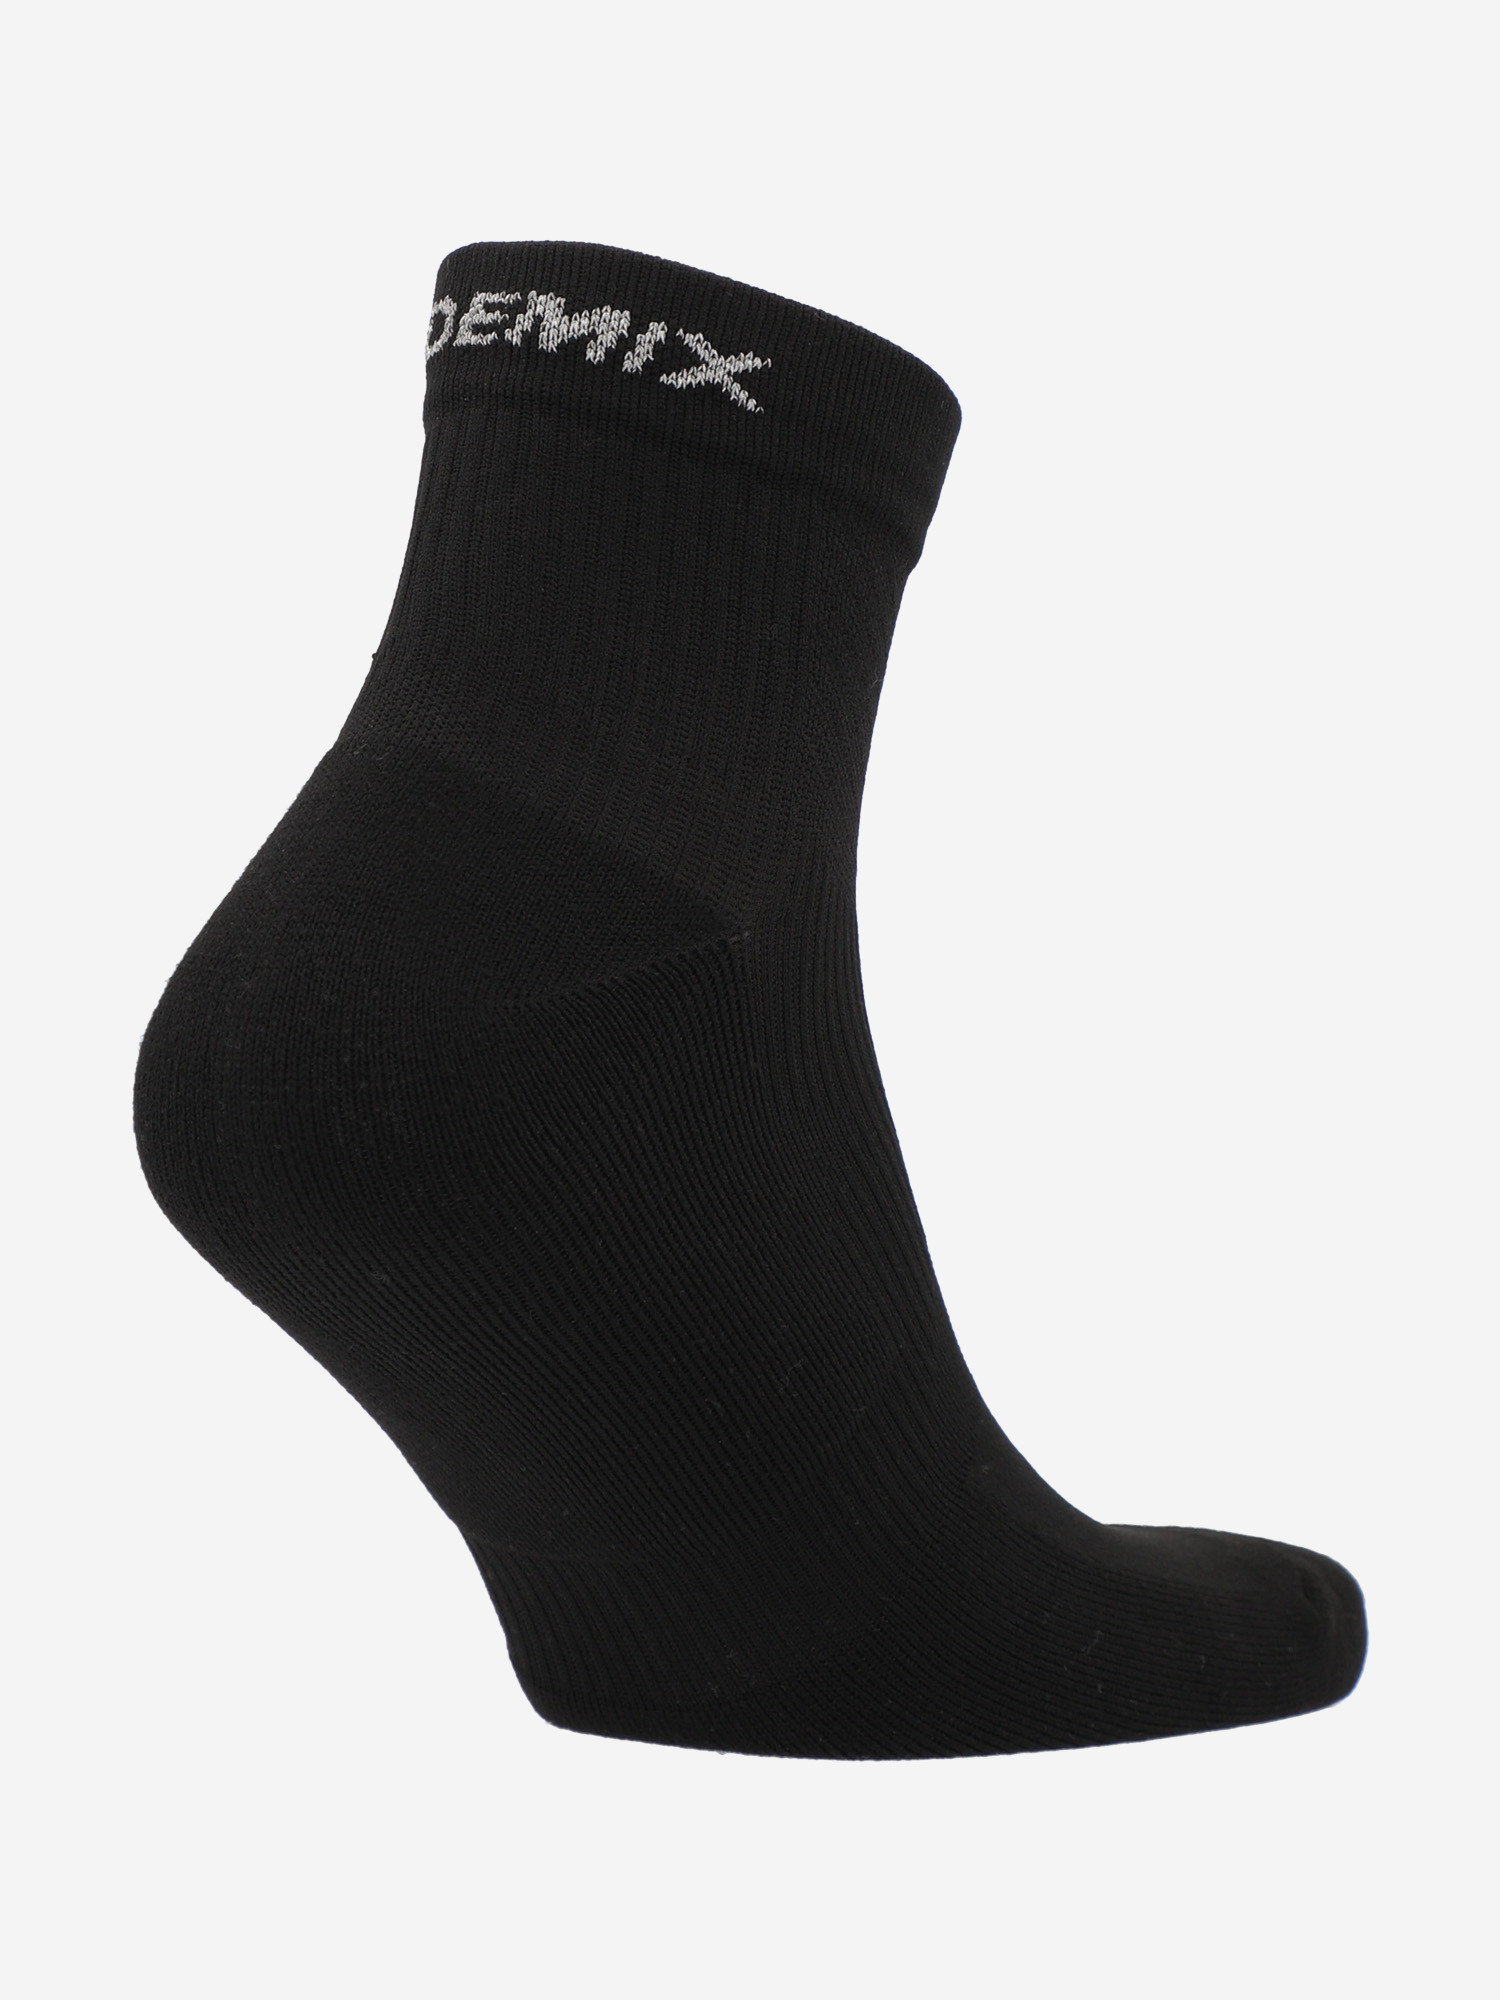 Шкарпетки Demix, 1 пара